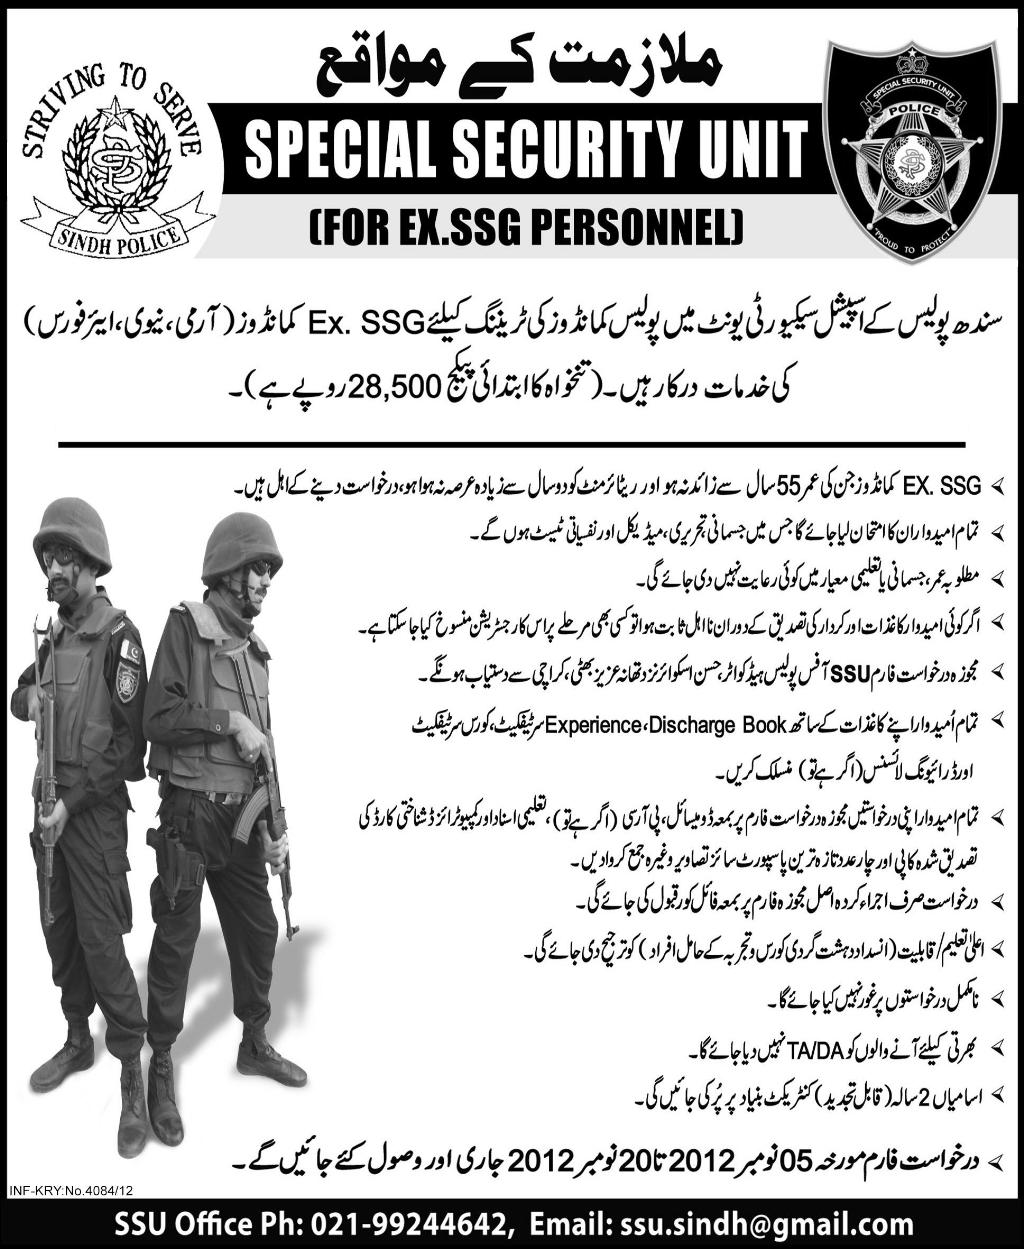 Special Security Unit (SSU) of Sindh Police Requires Ex. SSG Commandos